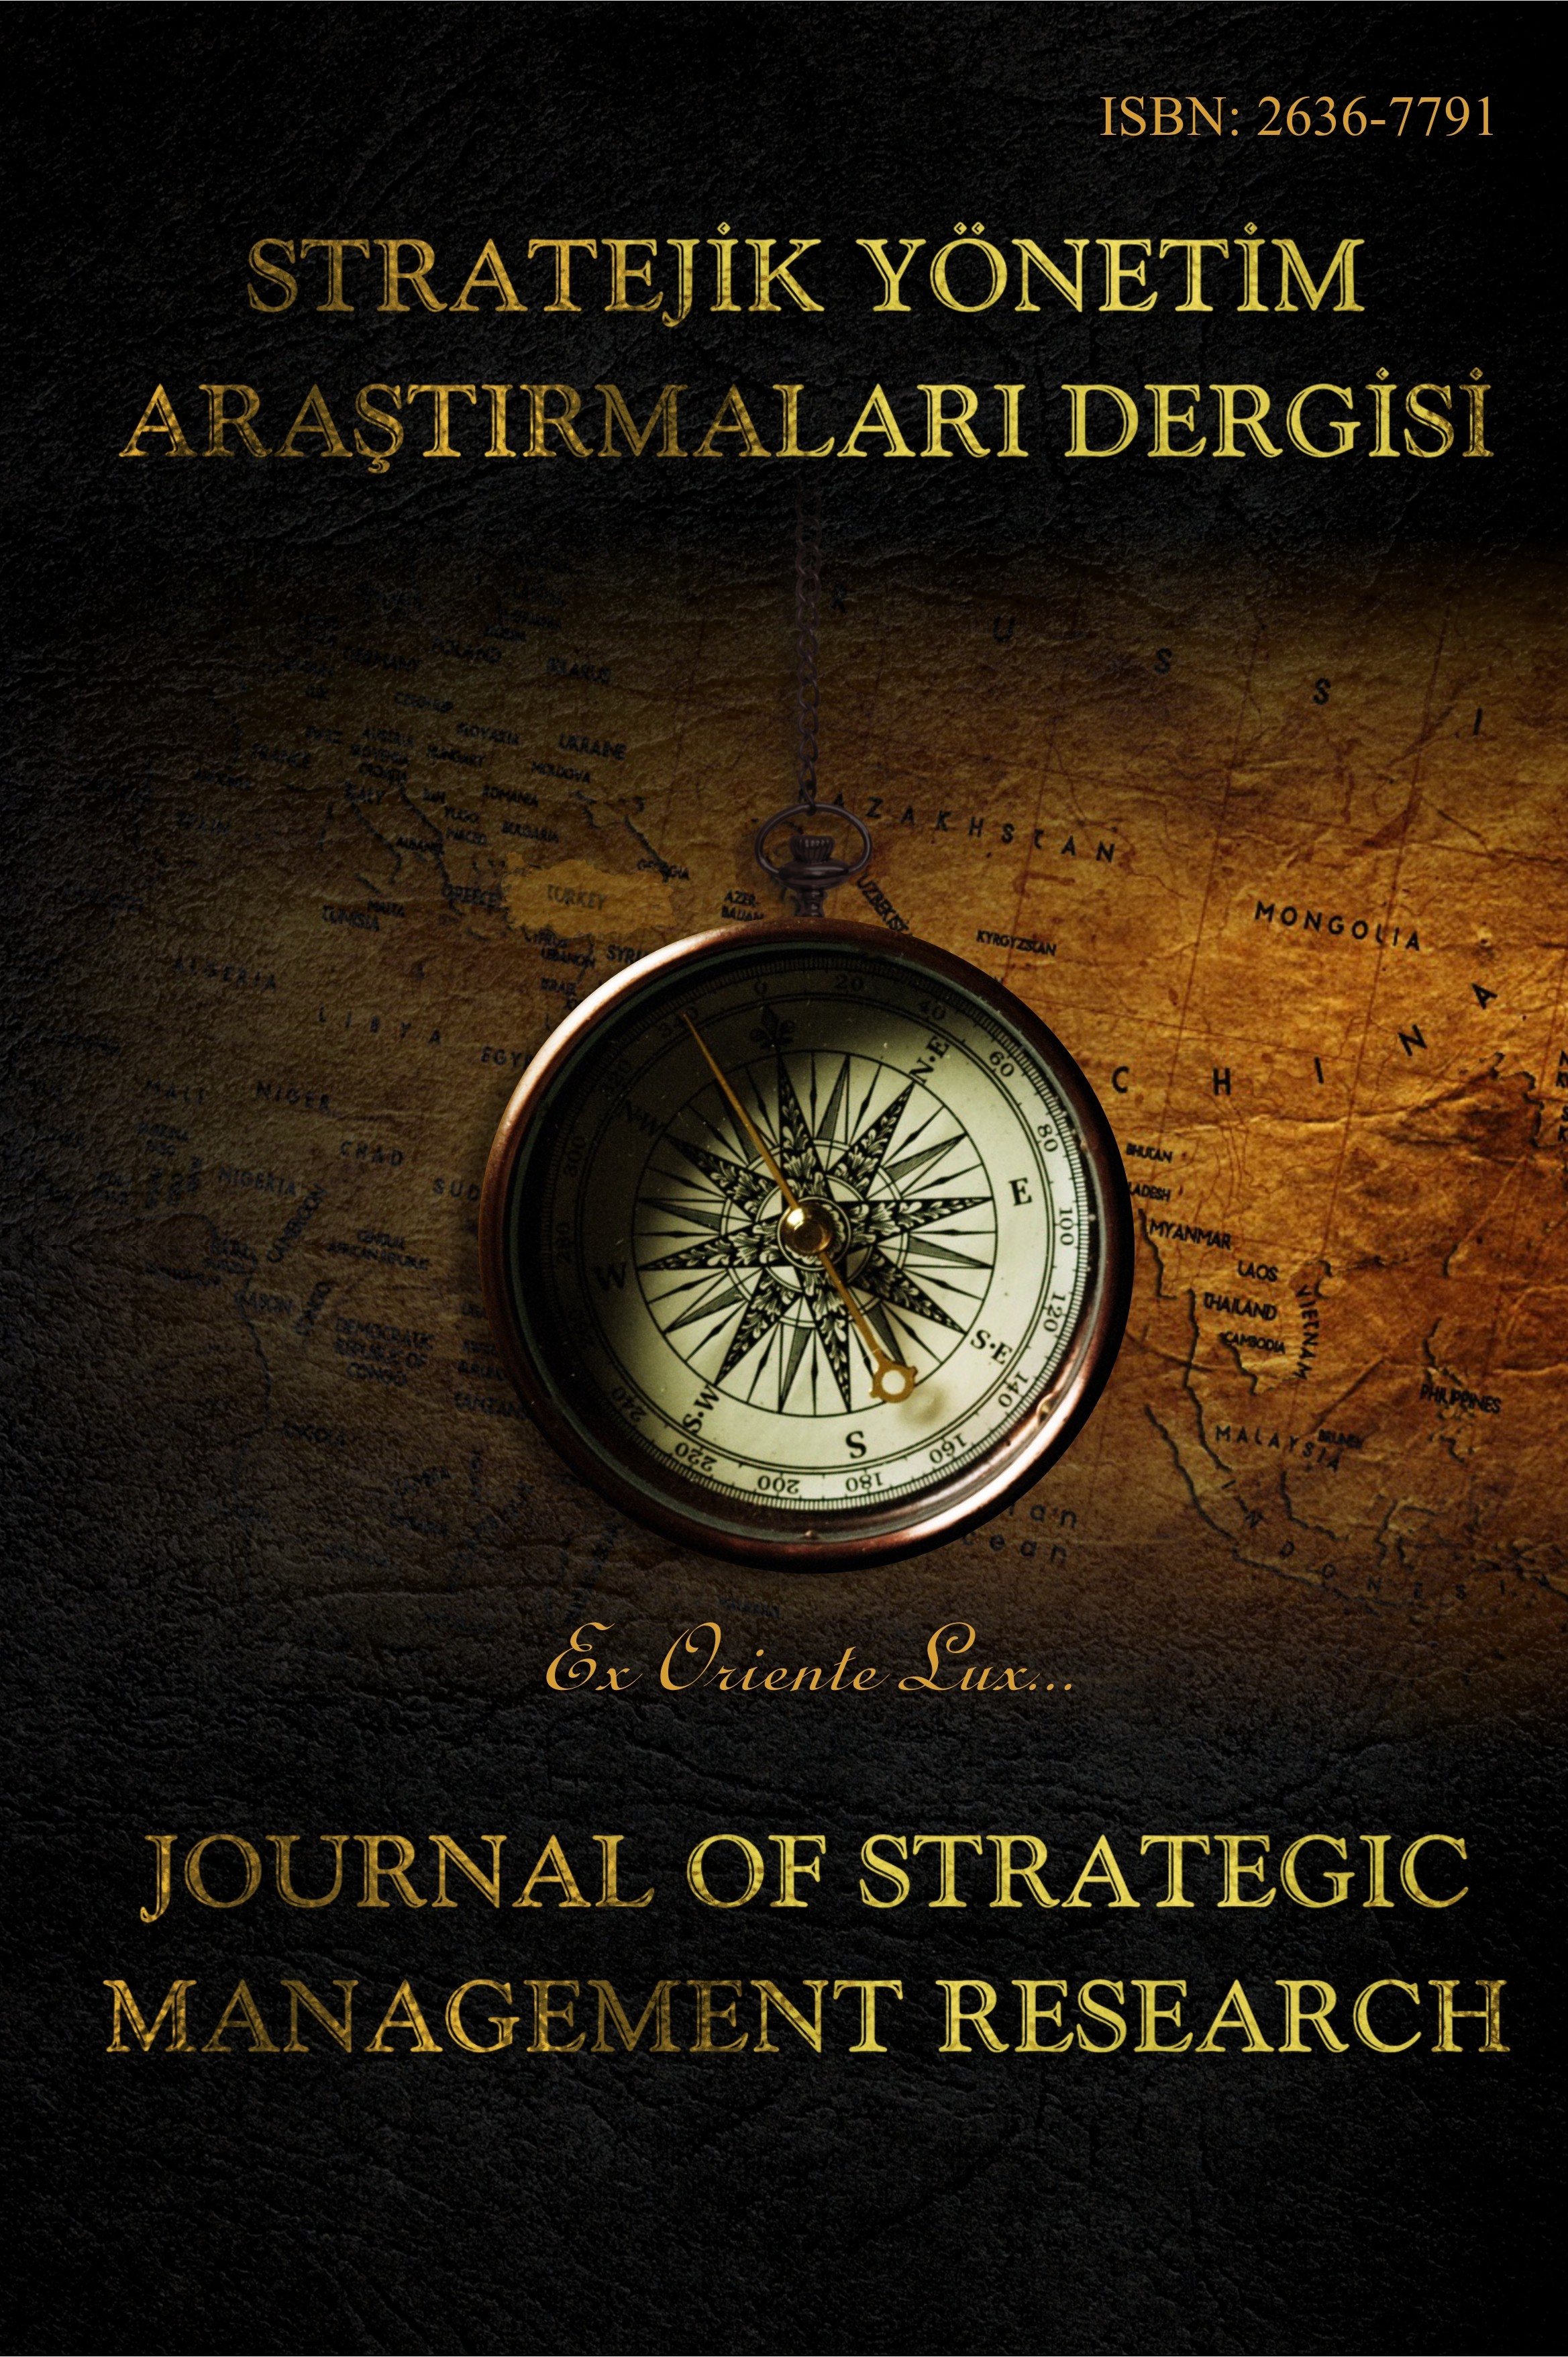 Stratejik Yönetim Araştırmaları Dergisi